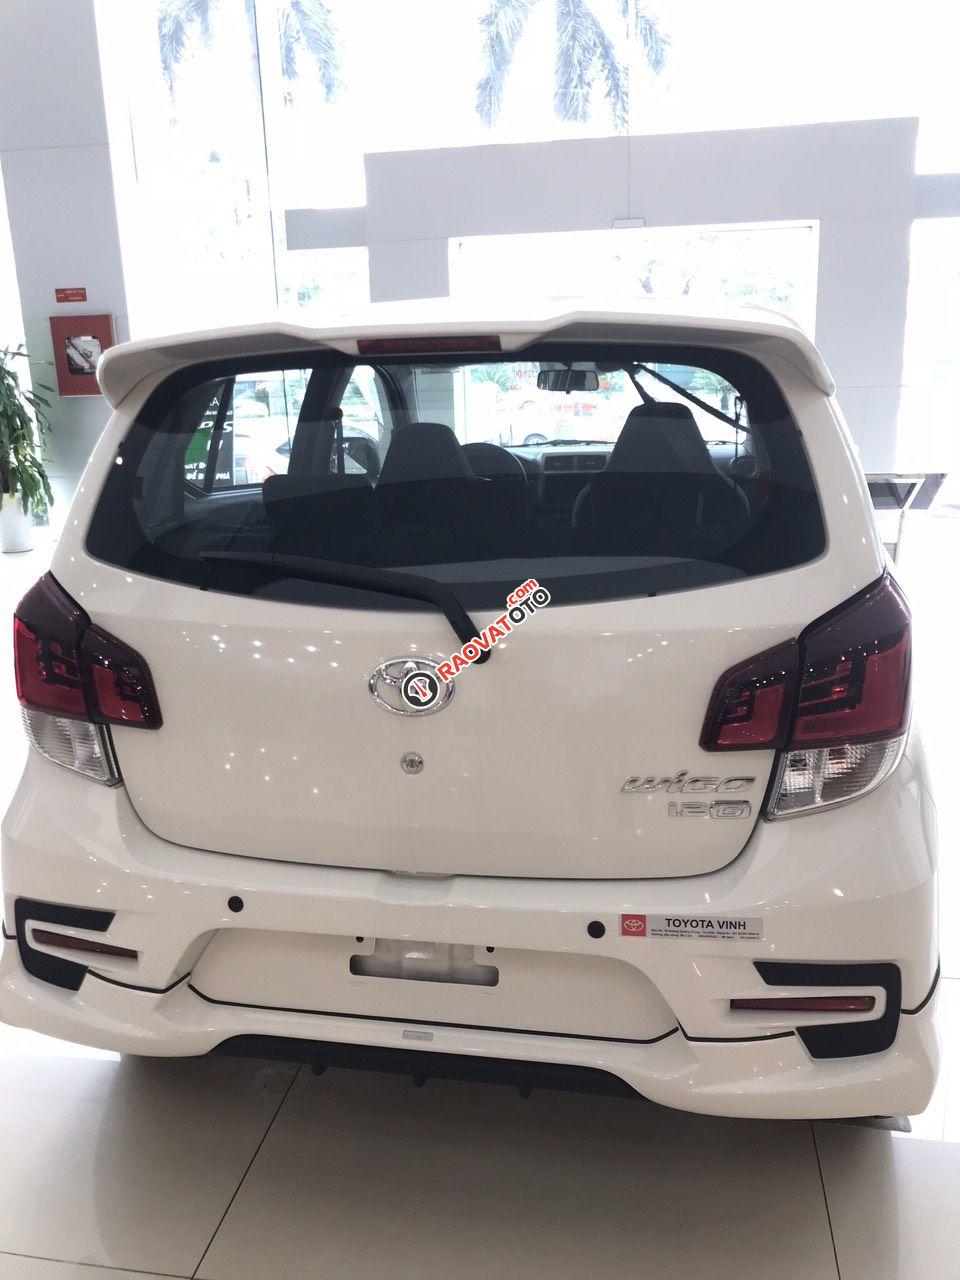 Toyota Vinh-Nghệ An-Hotline: 0904.72.52.66 bán xe Wigo tự động giá rẻ nhất Nghệ An, trả góp lãi suất từ 0%-5